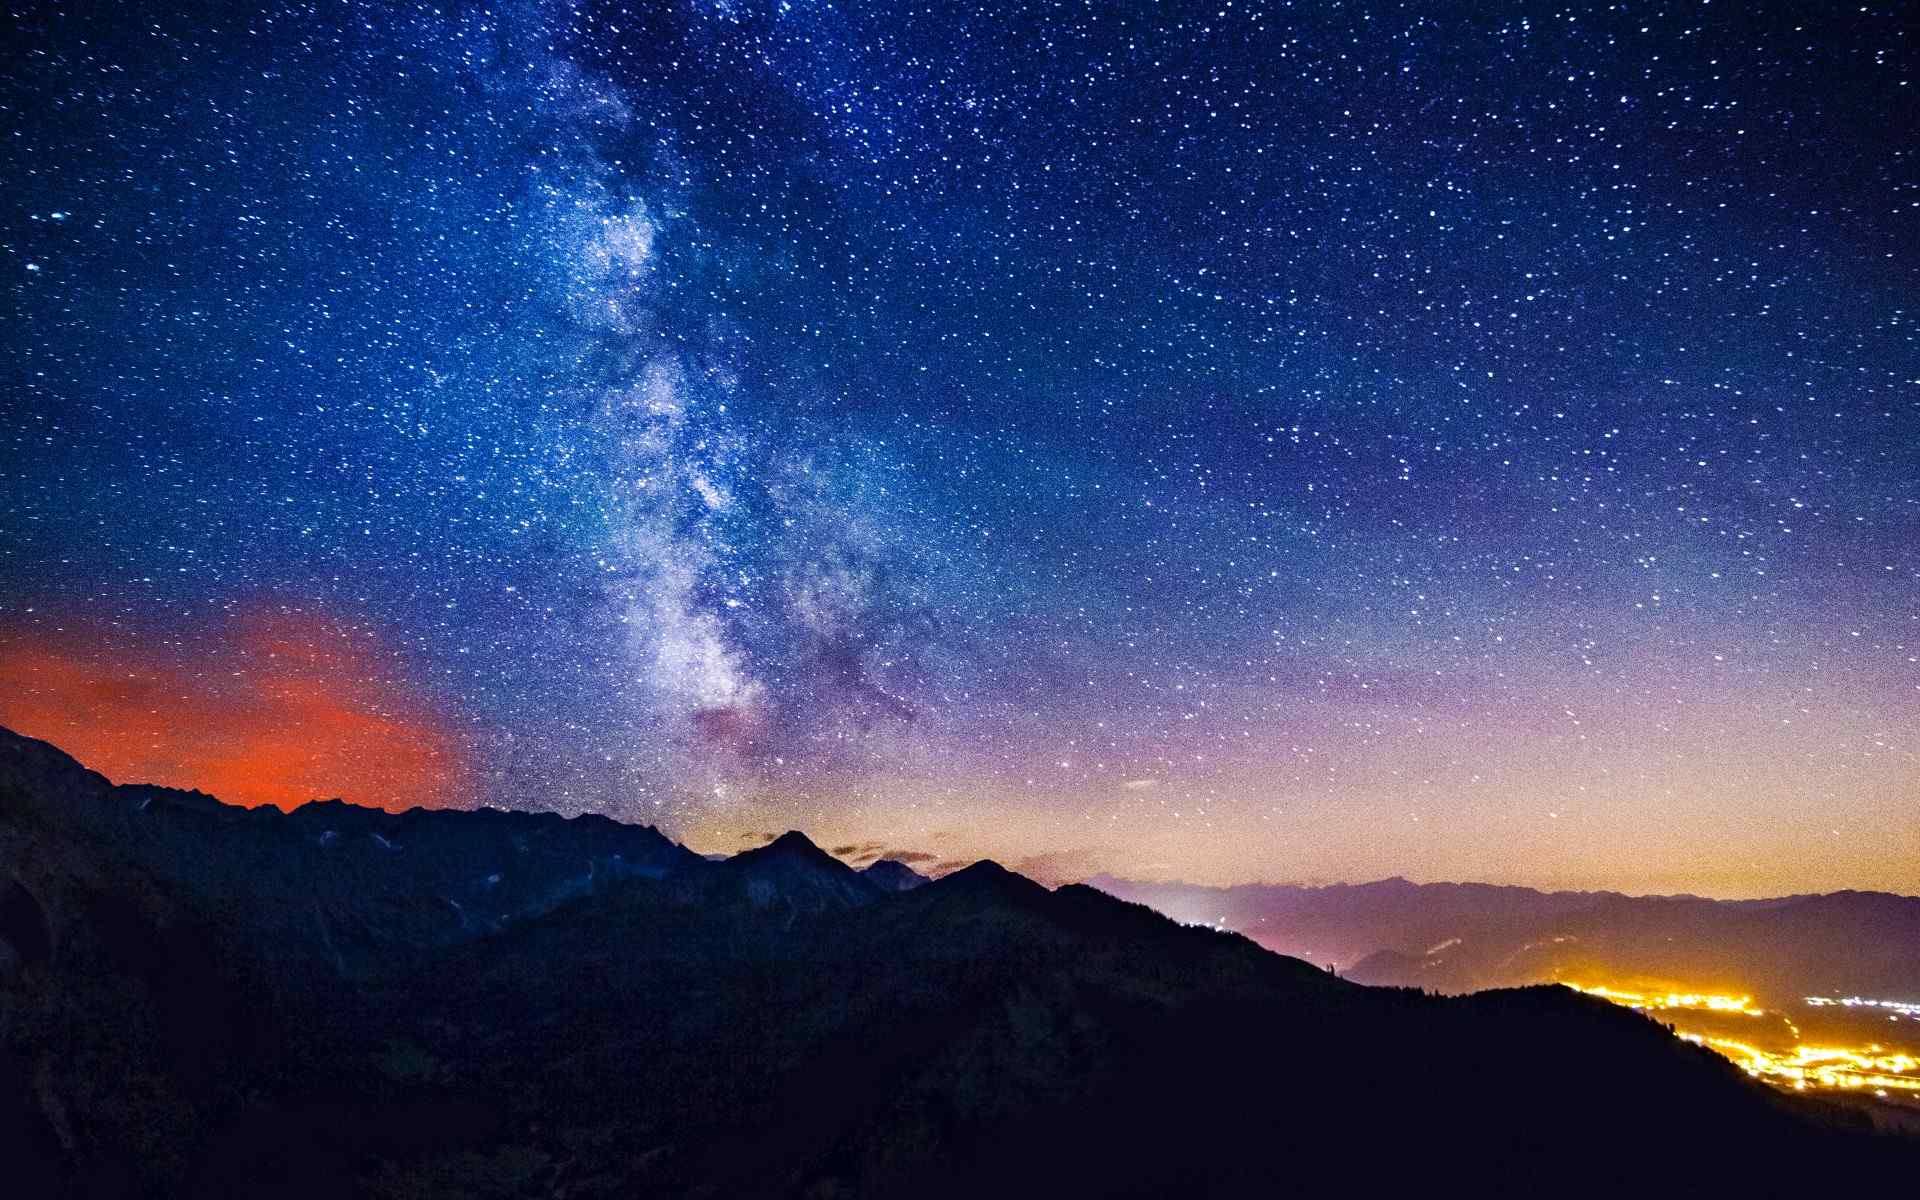 好看夜景璀璨星空唯美意境图片电脑桌面壁纸 第二辑